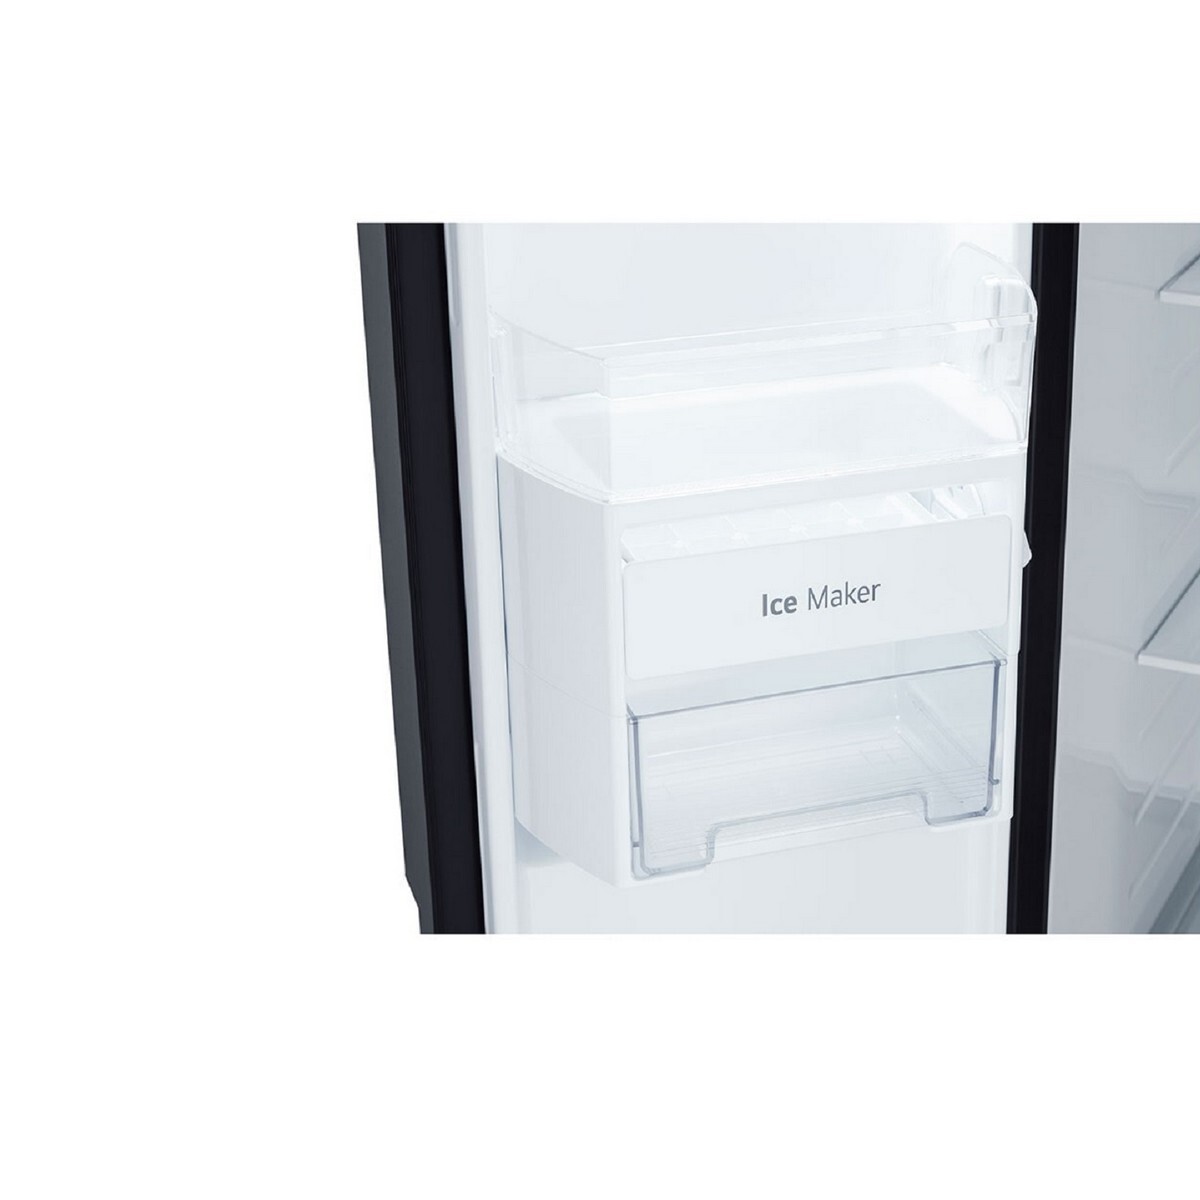 LG Side by Side Refrigerator GL-B257DBMX 655L,Black Mirror